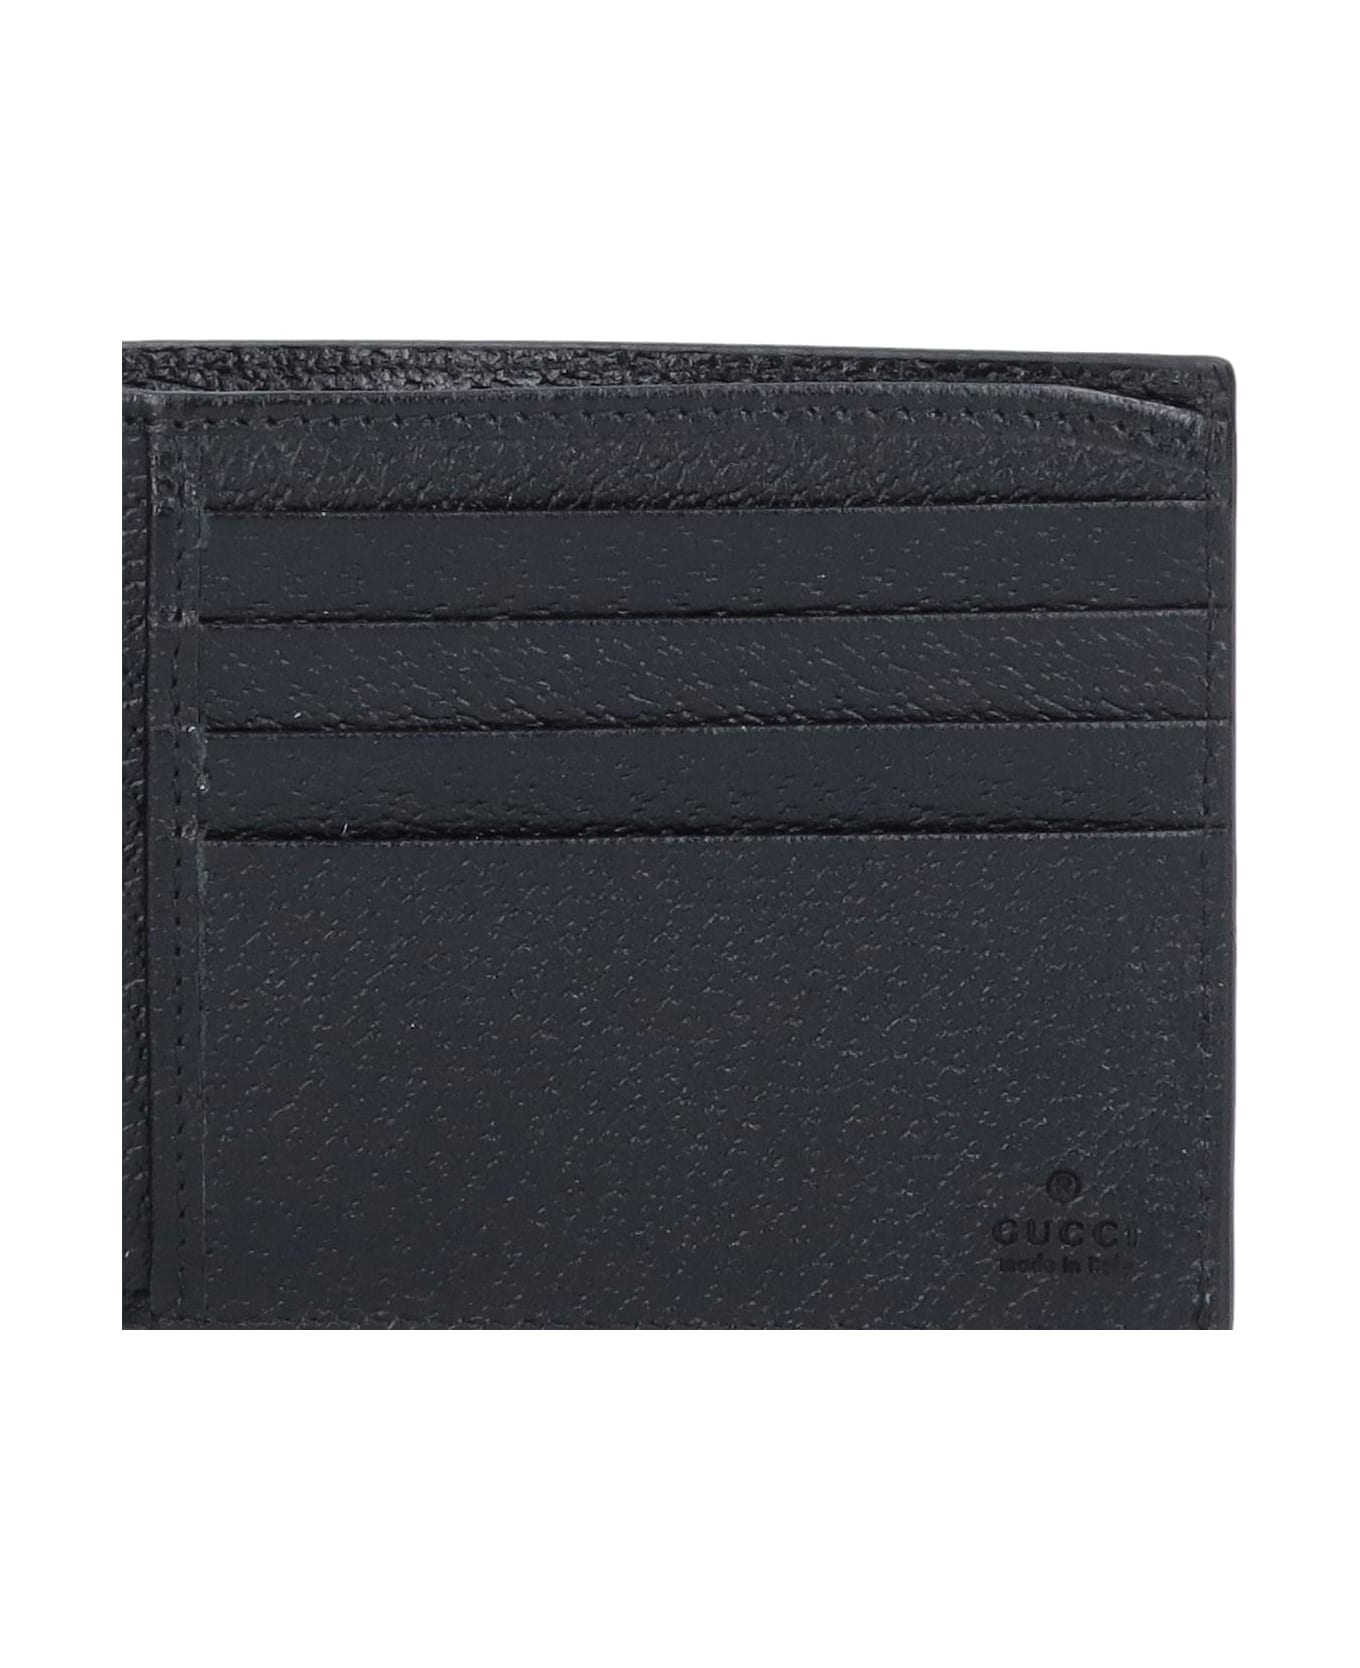 Gucci 'gg-marmont' Bi-fold Wallet - Black 財布